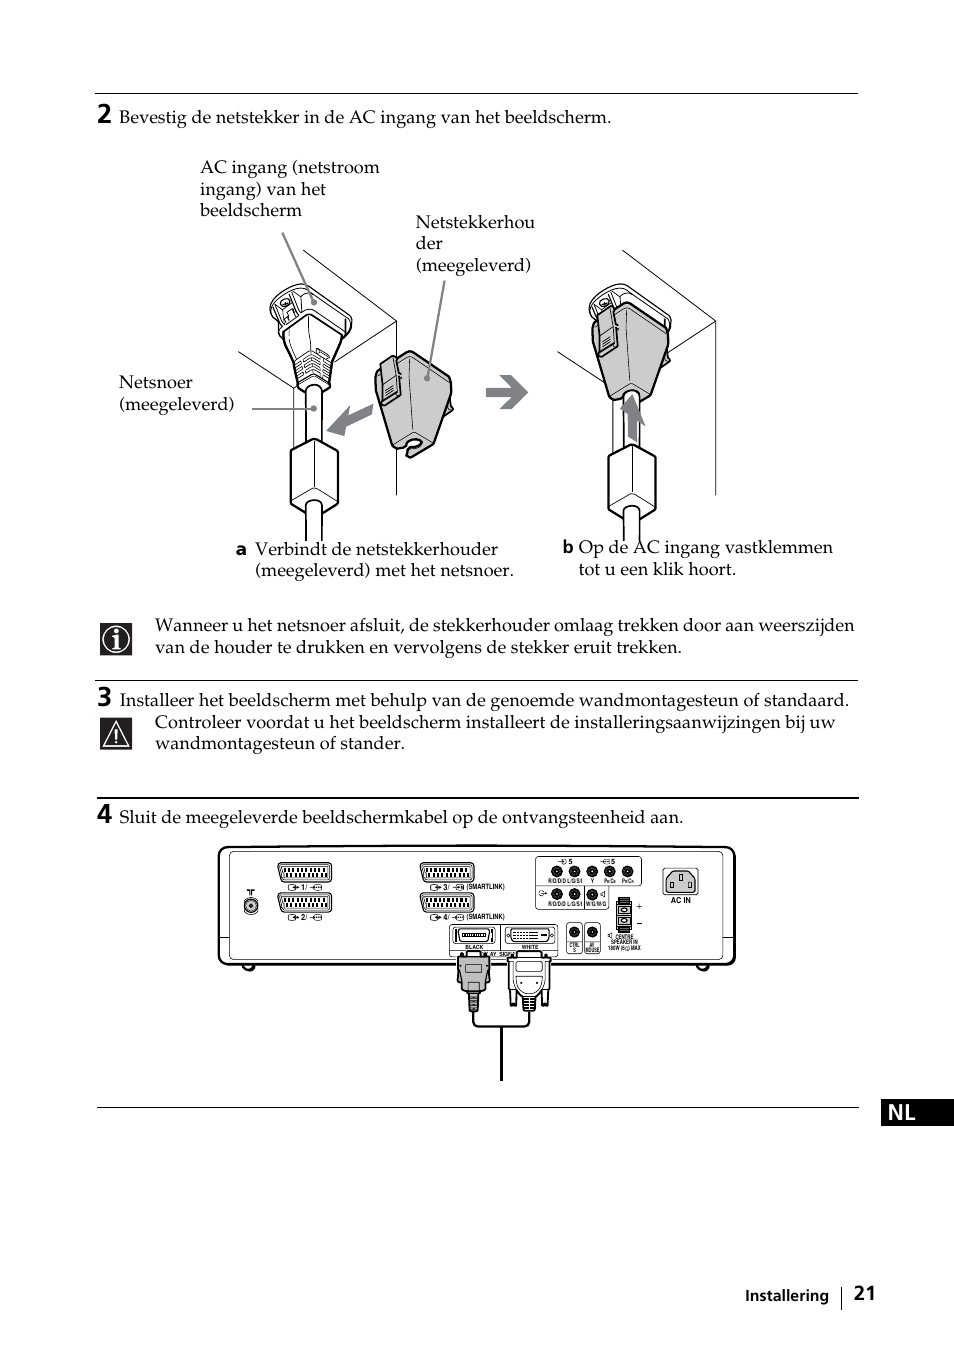 Installering | Sony KE-42MR1 Manuale d'uso | Pagina 97 / 302